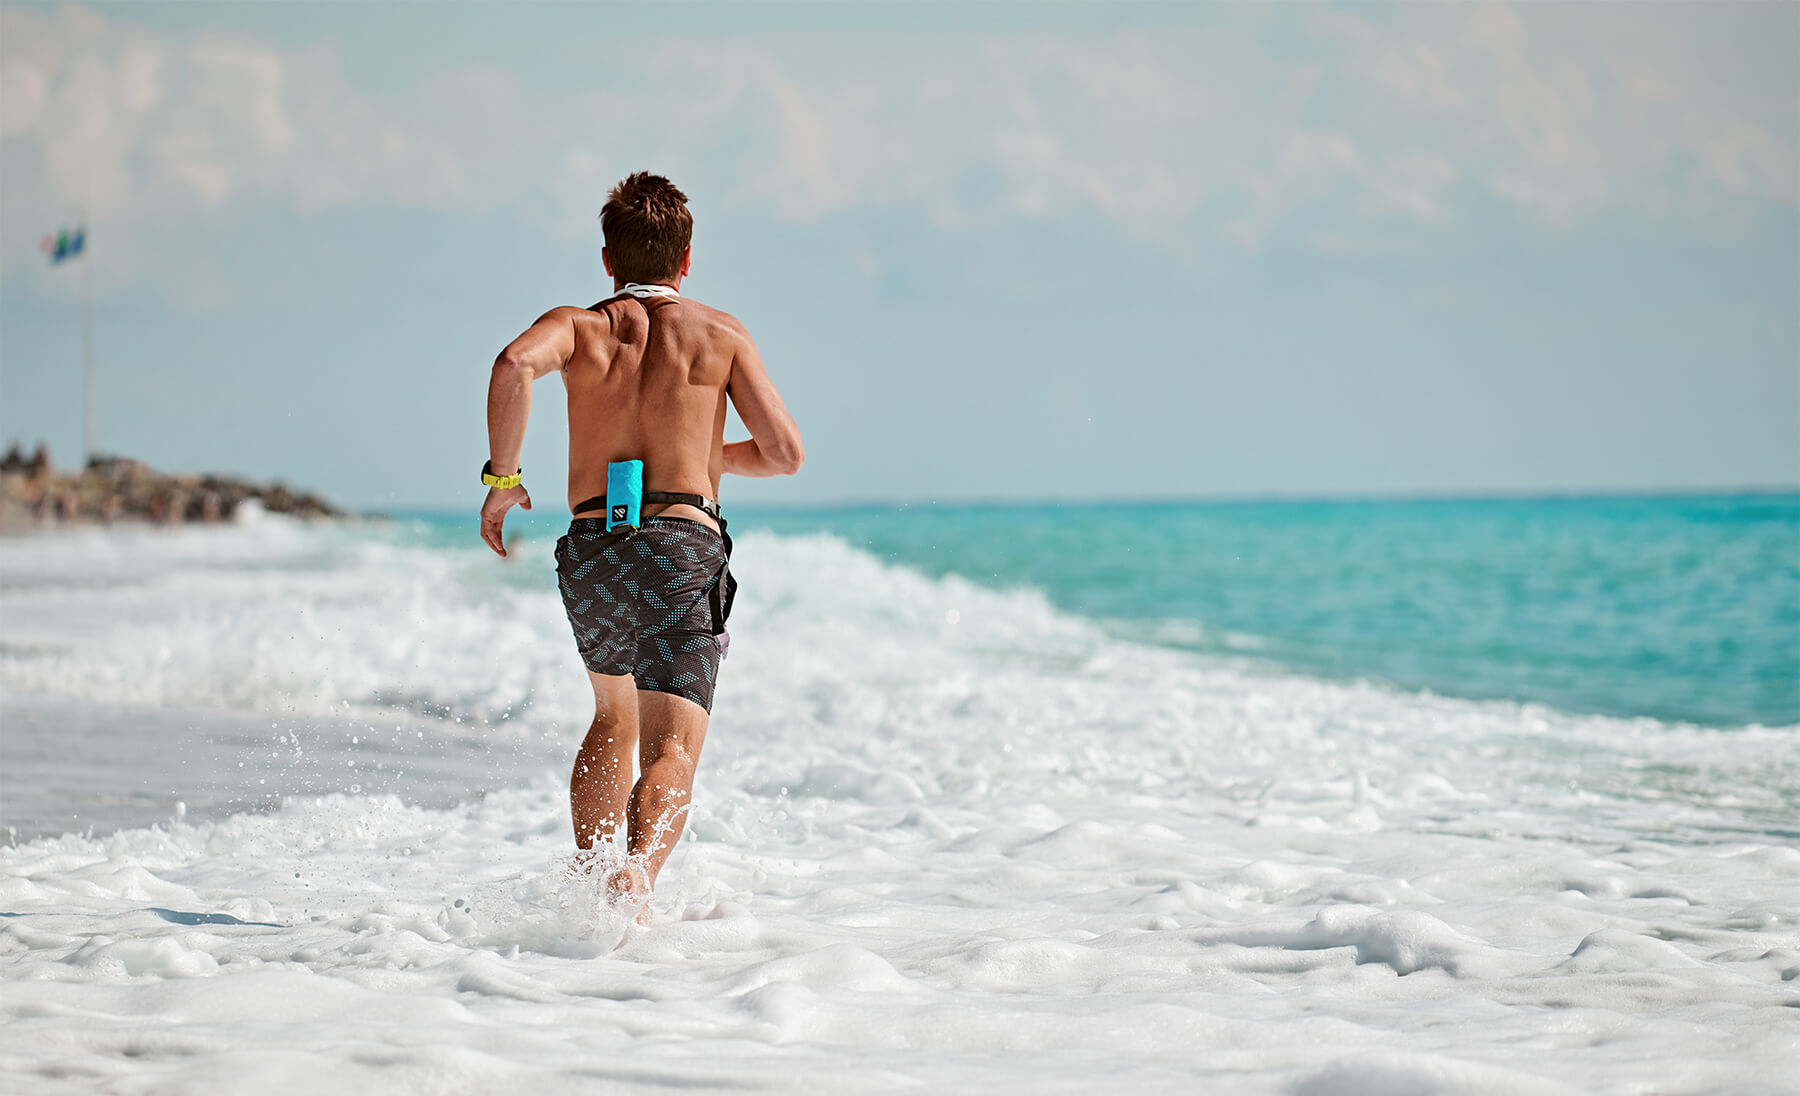 Loic Branda joggt mit Restube active am Strand durch das Wasser